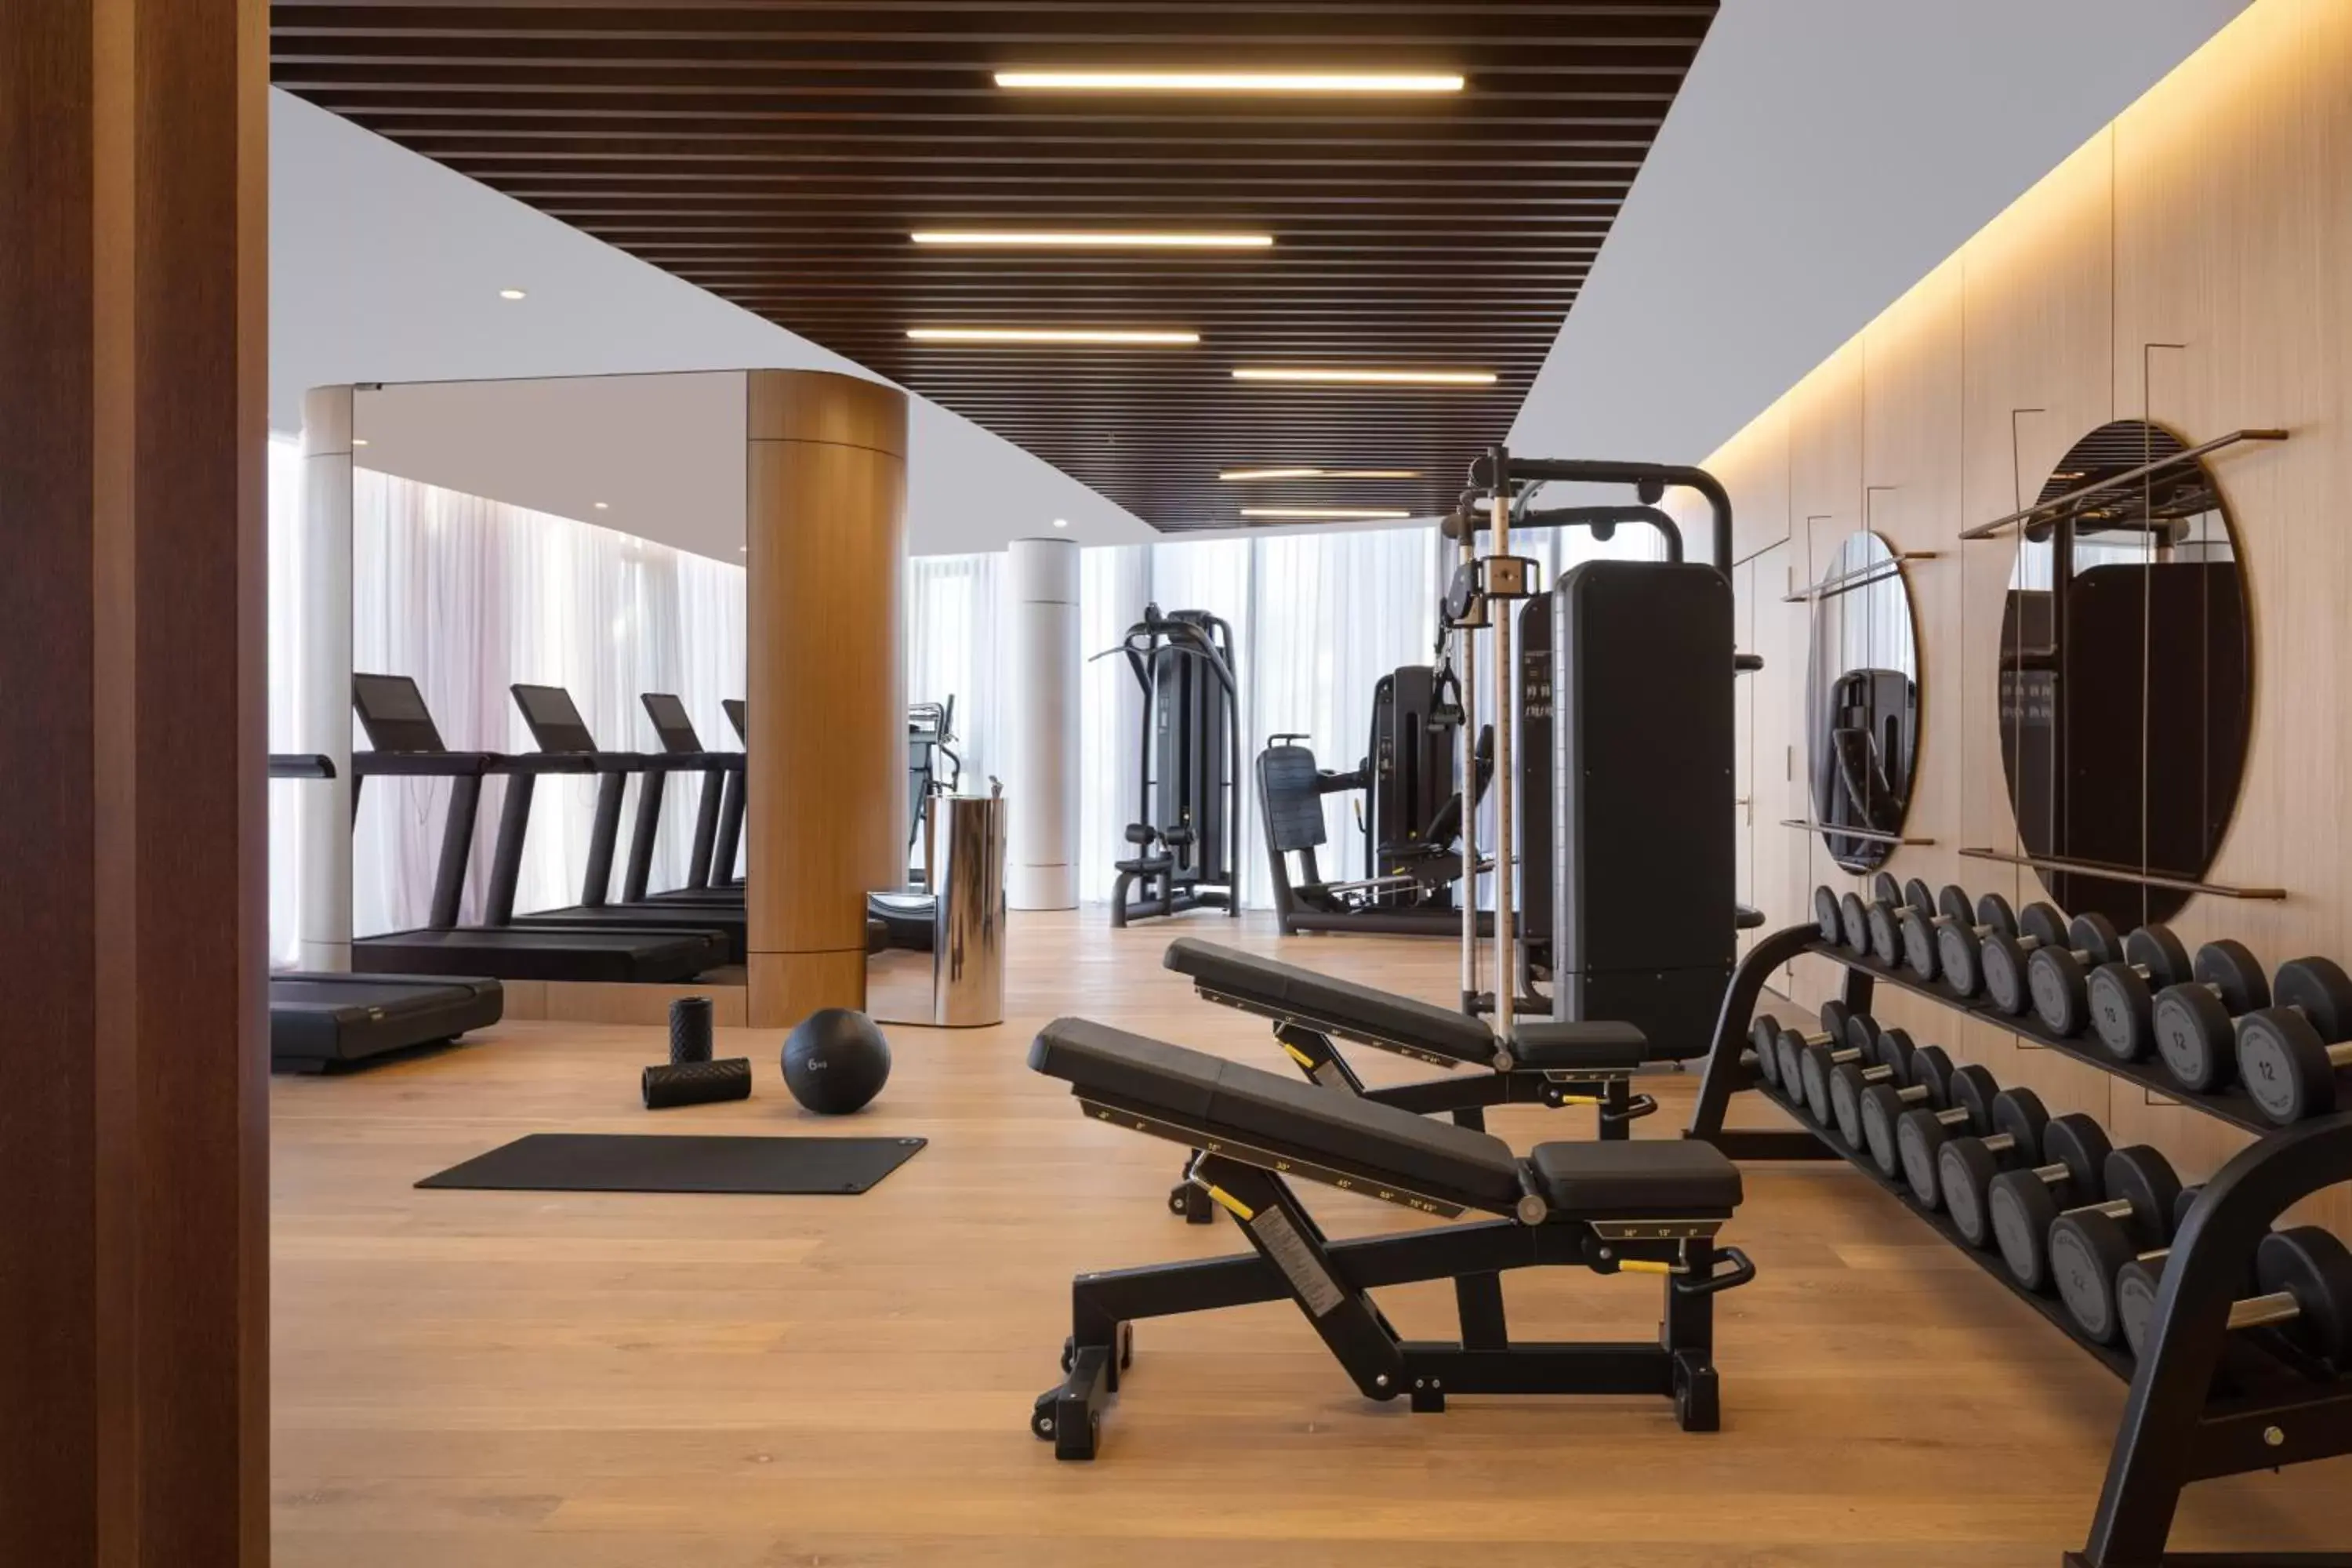 Fitness centre/facilities, Fitness Center/Facilities in Tirana Marriott Hotel